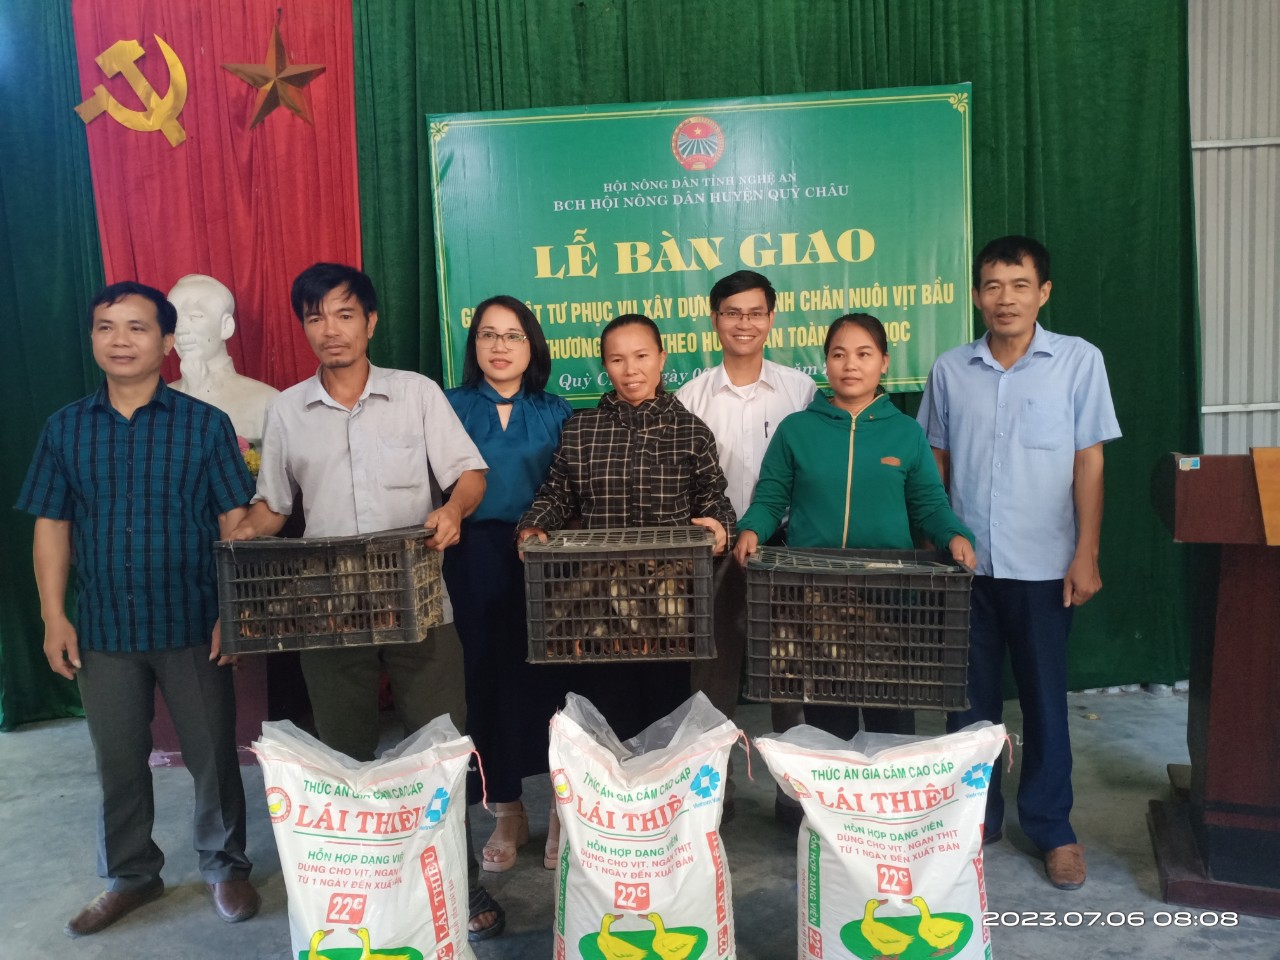 Nghệ An: Hội Nông dân huyện Quỳ Châu trao giống vật tư xây dựng mô hình chăn nuôi vịt bầu Quỳ đặc sản - Ảnh 2.